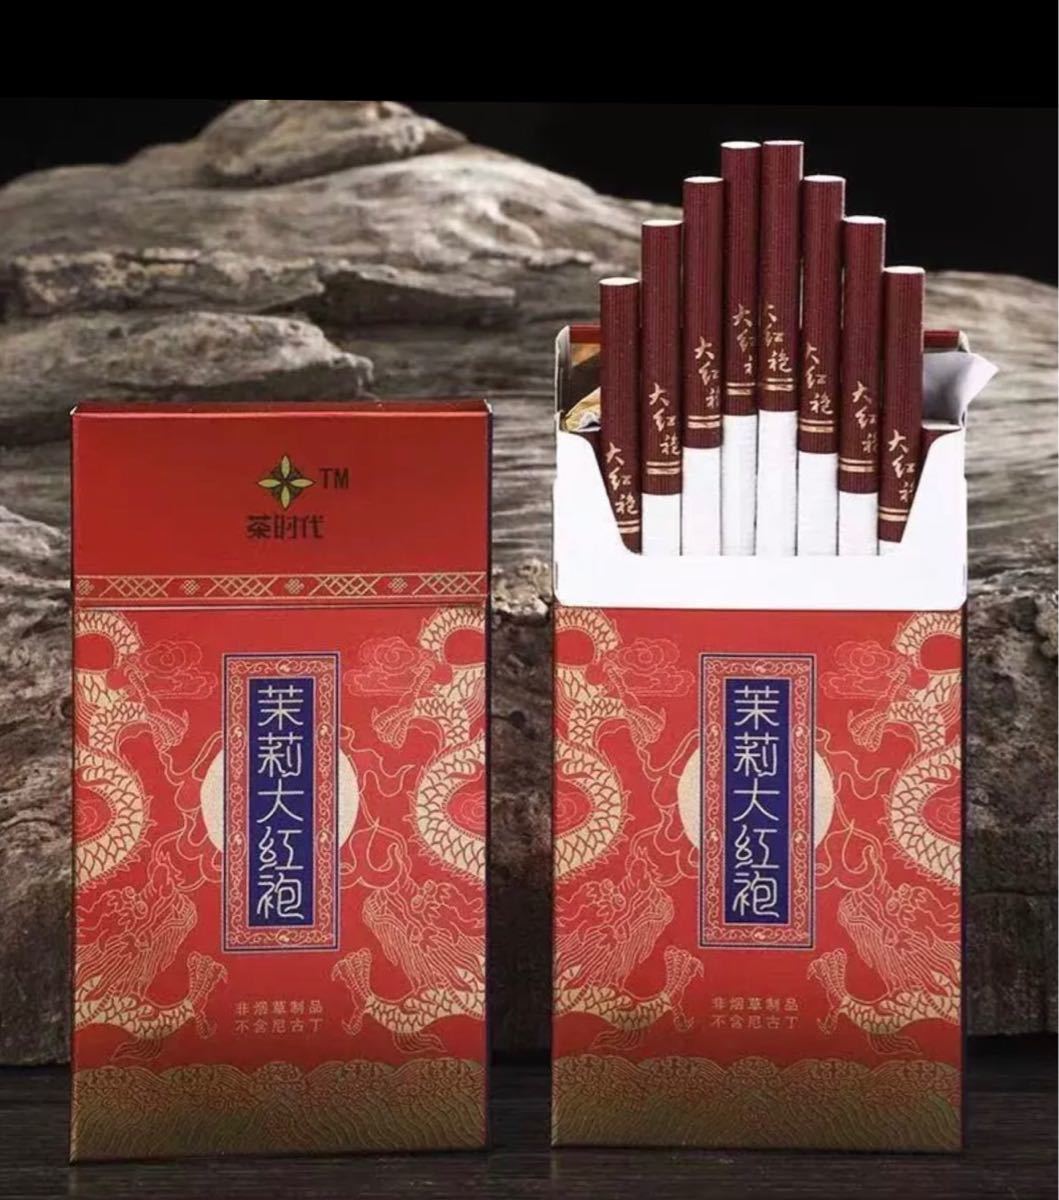 Paypayフリマ 中国発 話題のジャスミンの茶たばこ ニコチンタールフリー